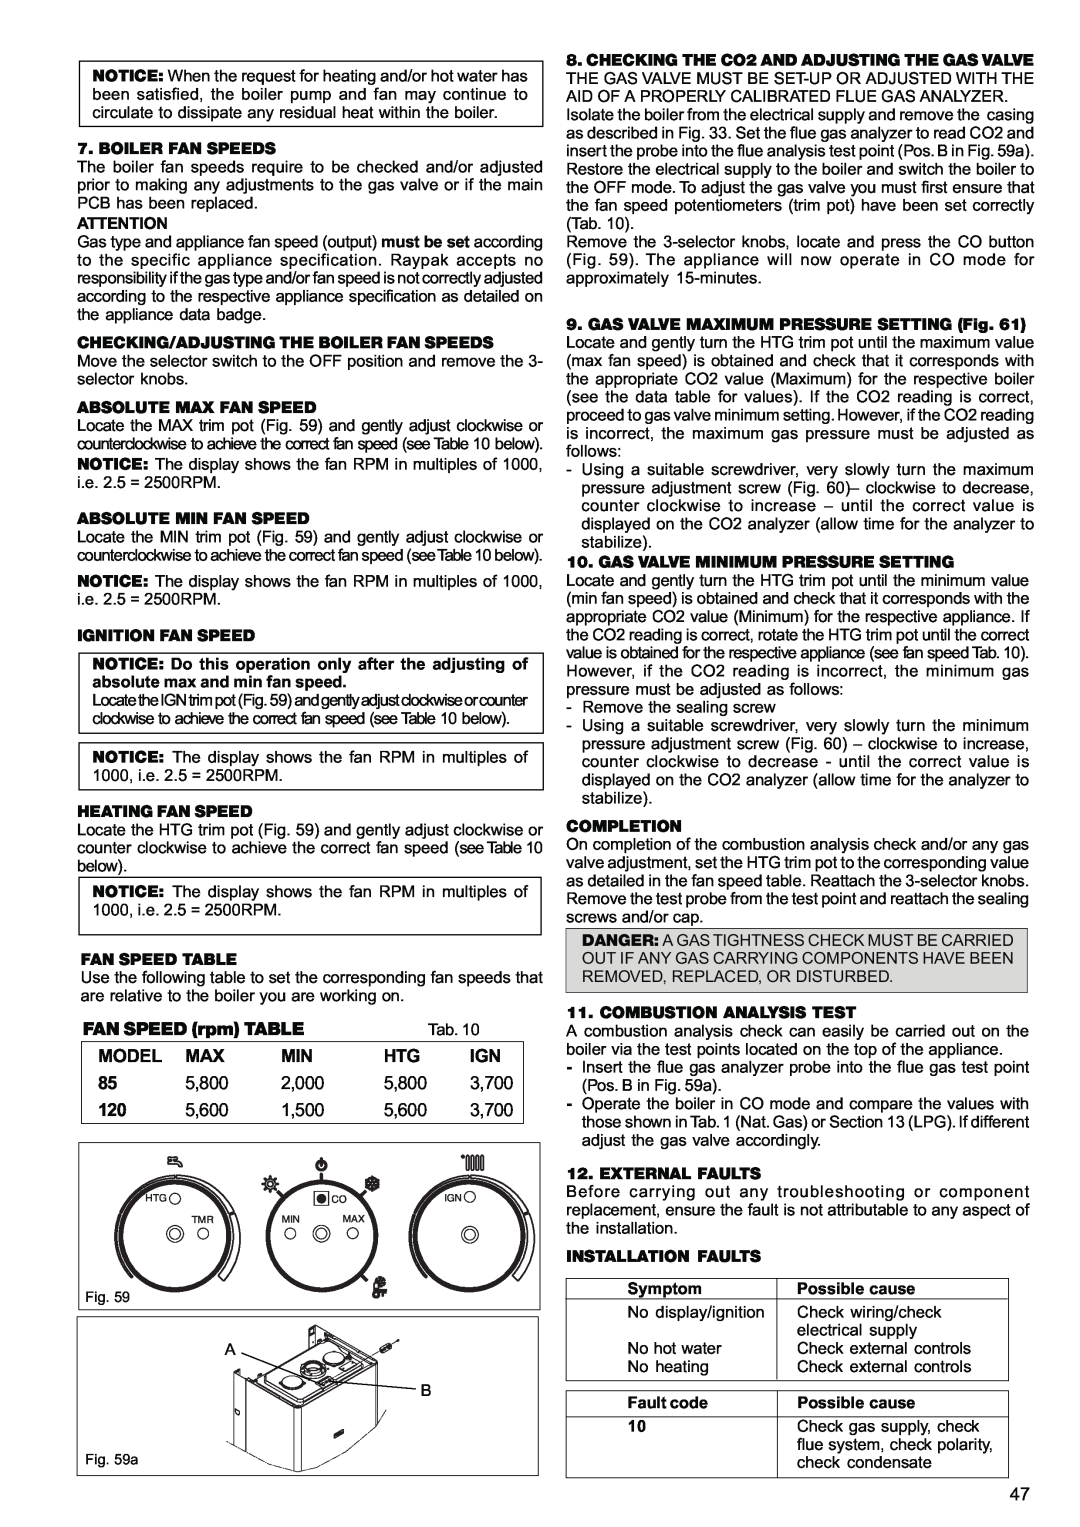 Raypak 120, 85 manual FAN SPEED rpm TABLE, Model, 5,800, 2,000, 3,700, 5,600, 1,500 